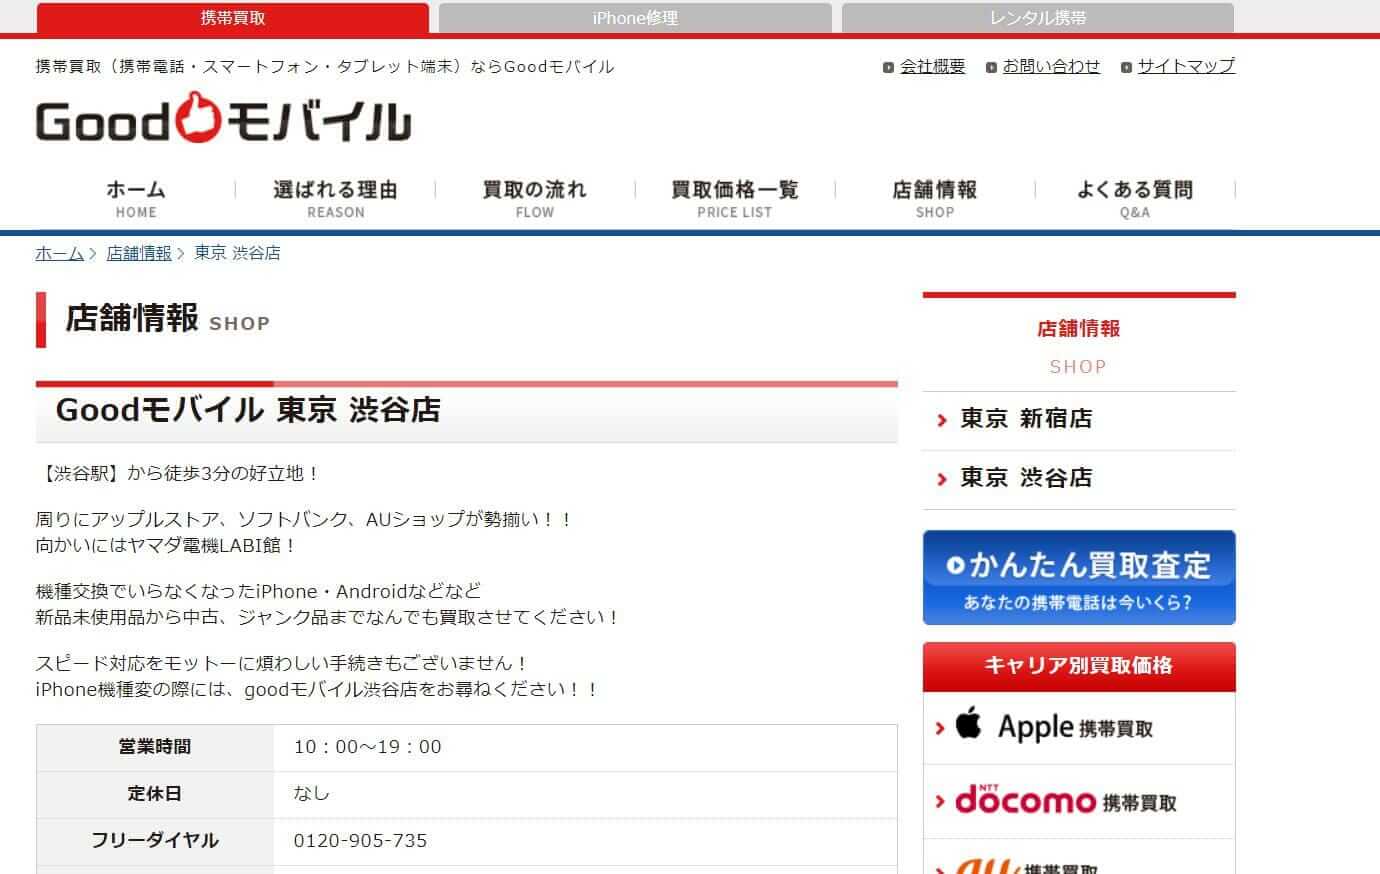 Goodモバイル 東京 渋谷店の公式サイトの画像